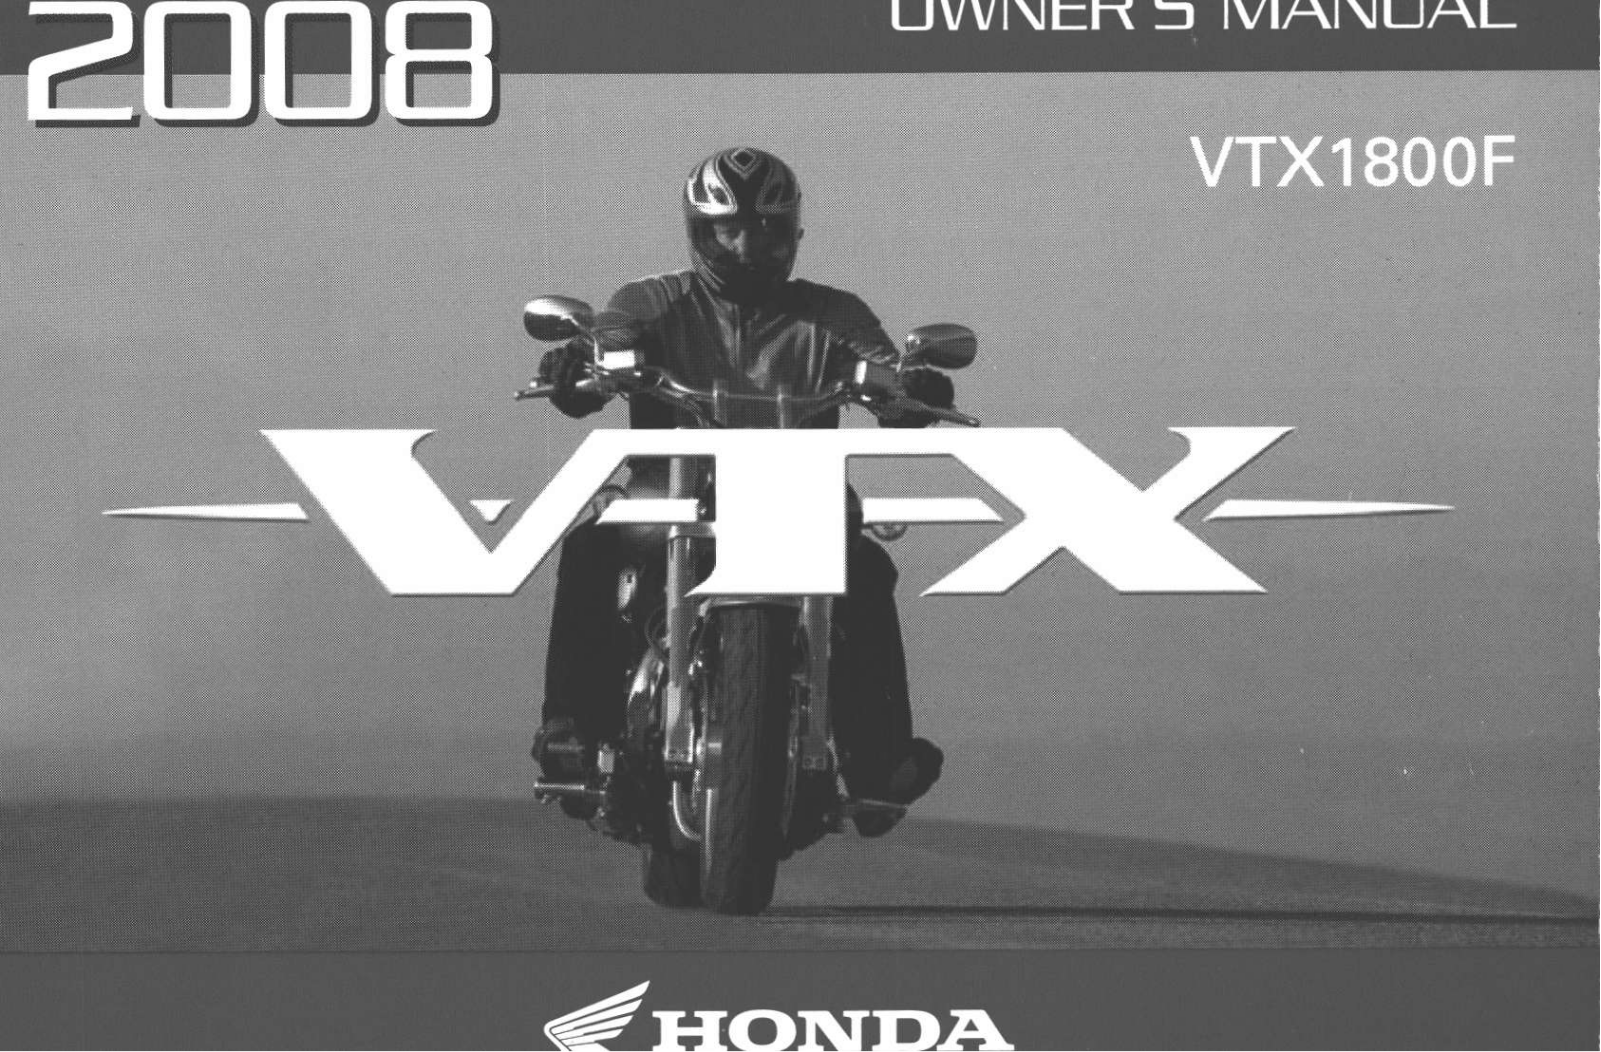 Honda VTX1800F 2008 Owner's Manual